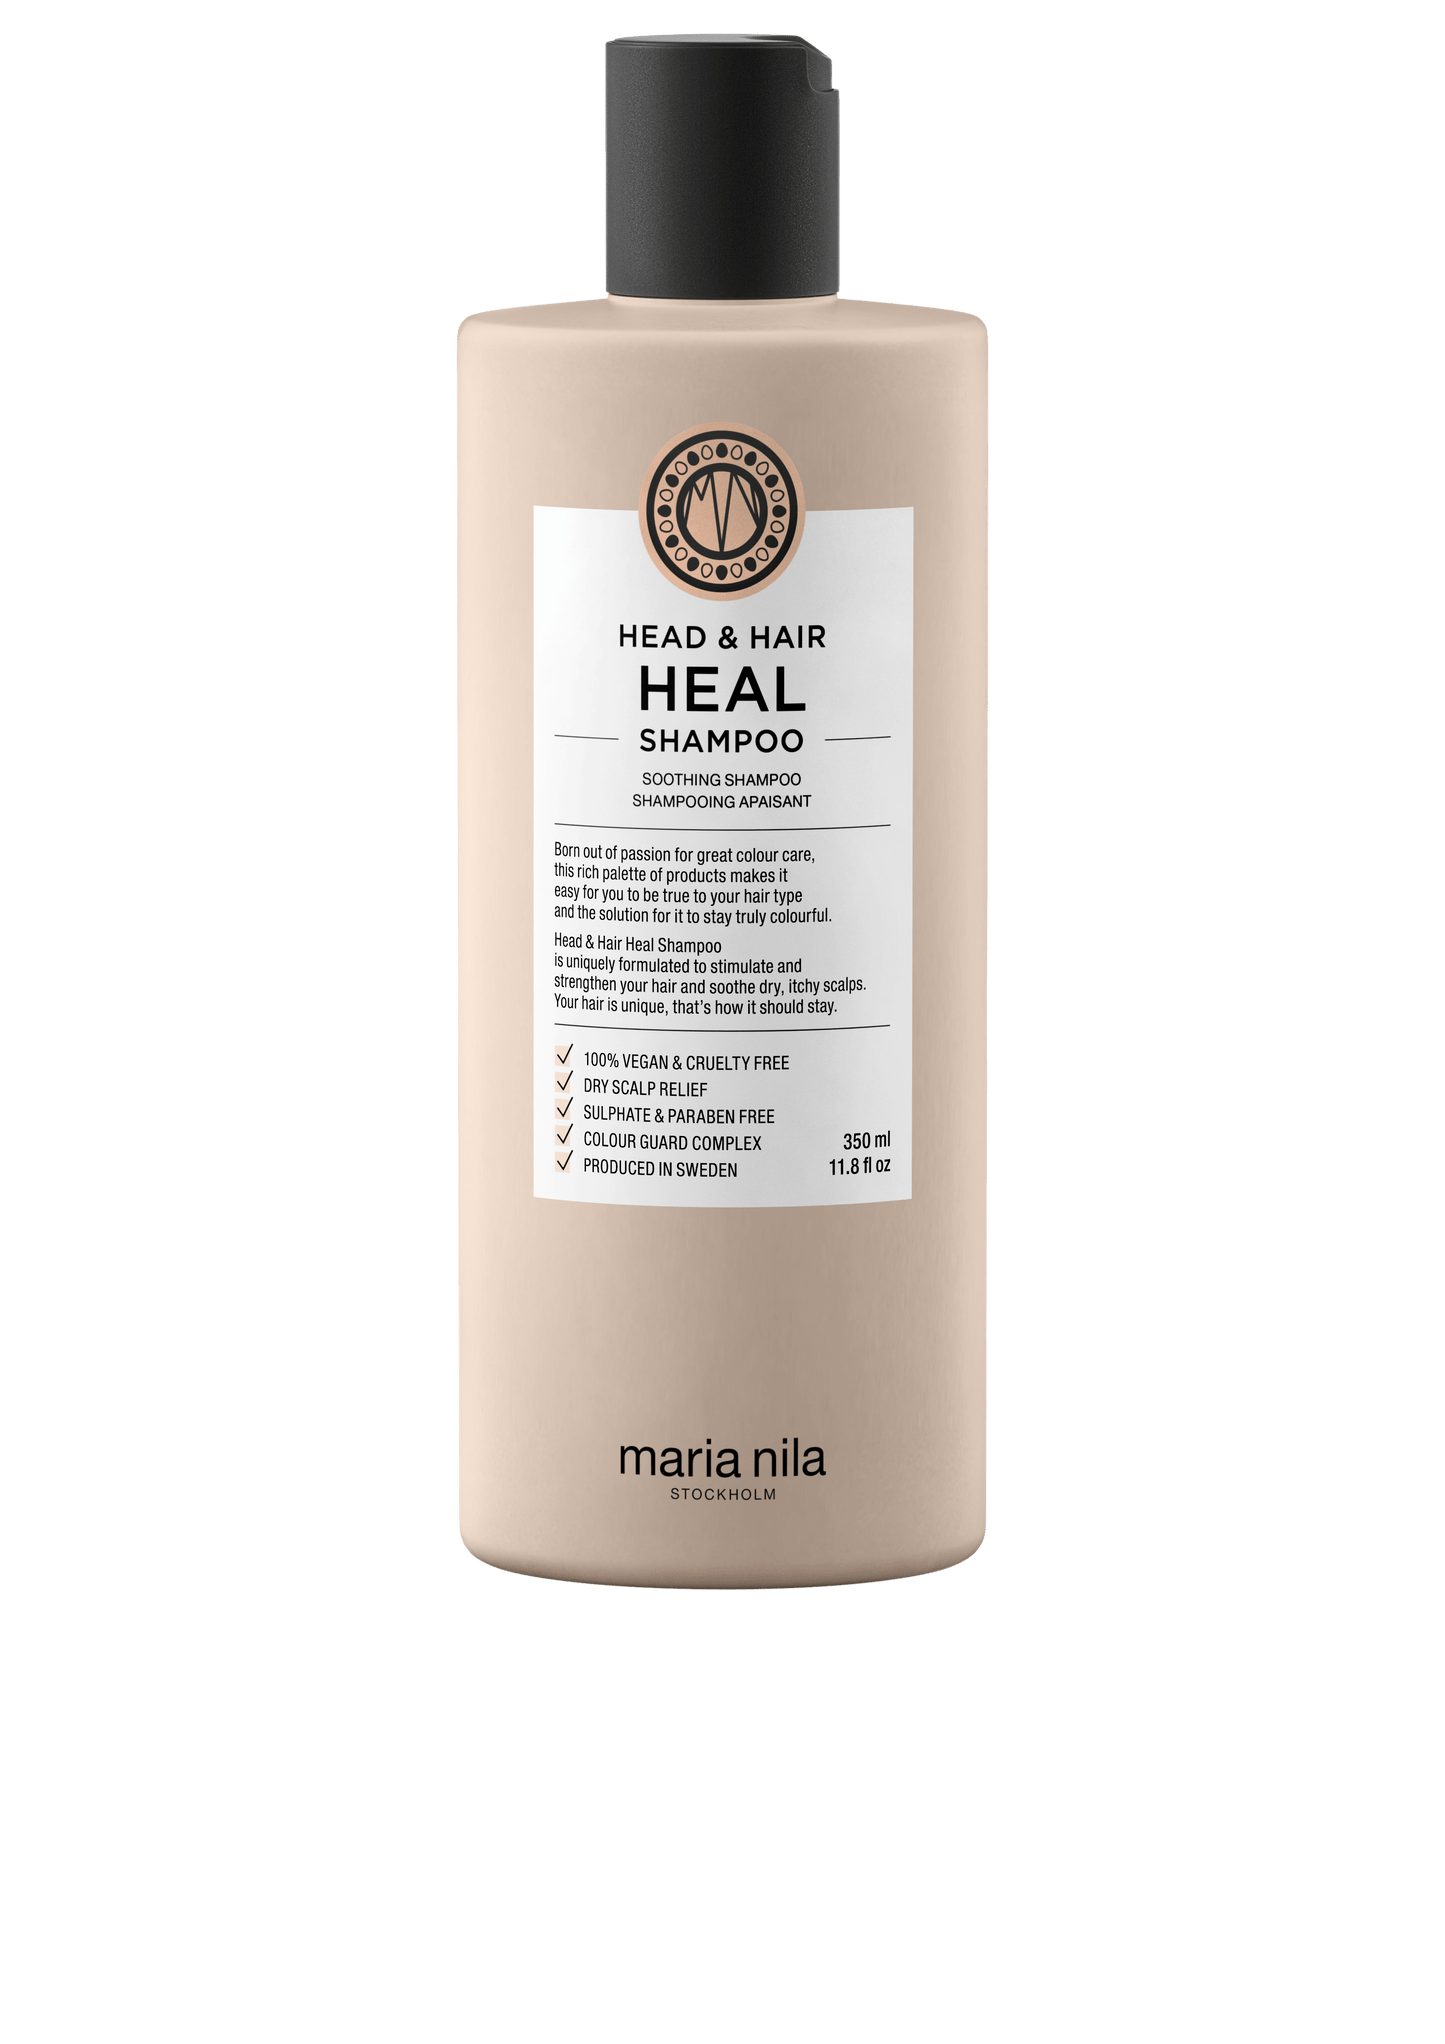 Head & Hair Heal Shampoo - The Coloroom 